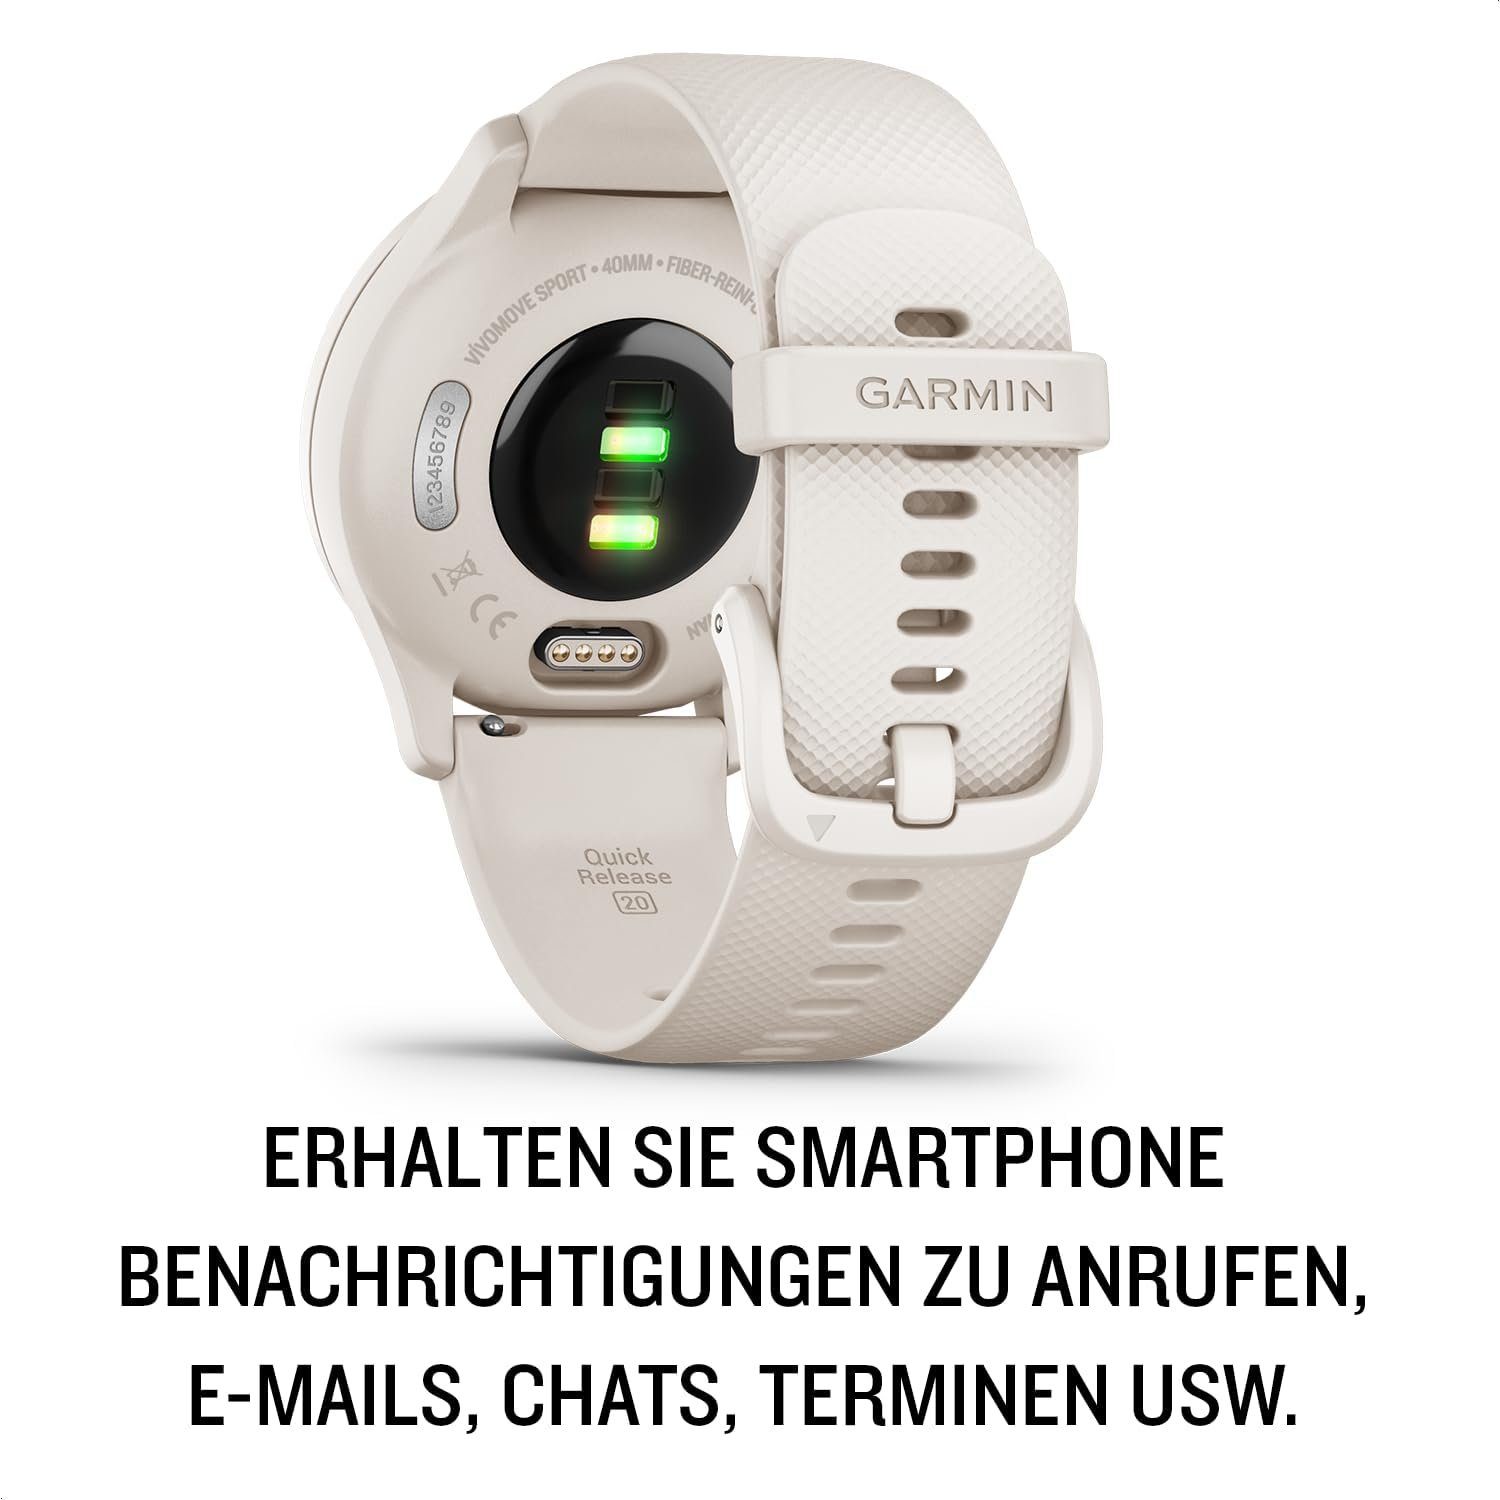 Garmin Smartwatch (Android iOS), Zeigern Touchdisplay. Smartphone und Sport- und Gesundheitsfunktionen